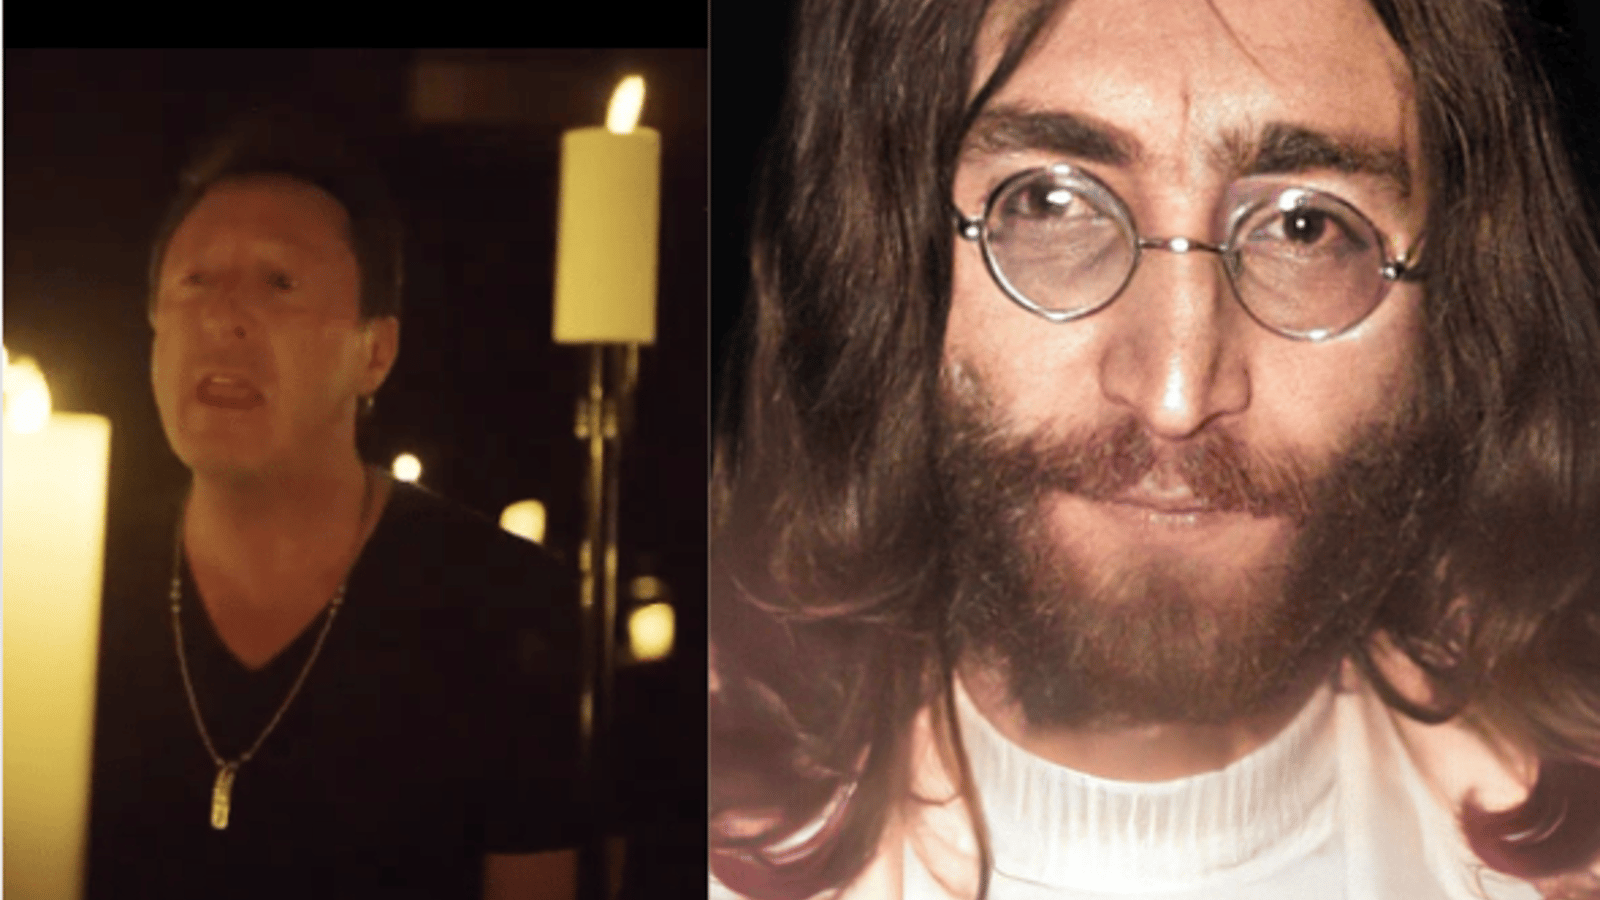 Le fils de John Lennon reprend Imagine pour la première fois publiquement